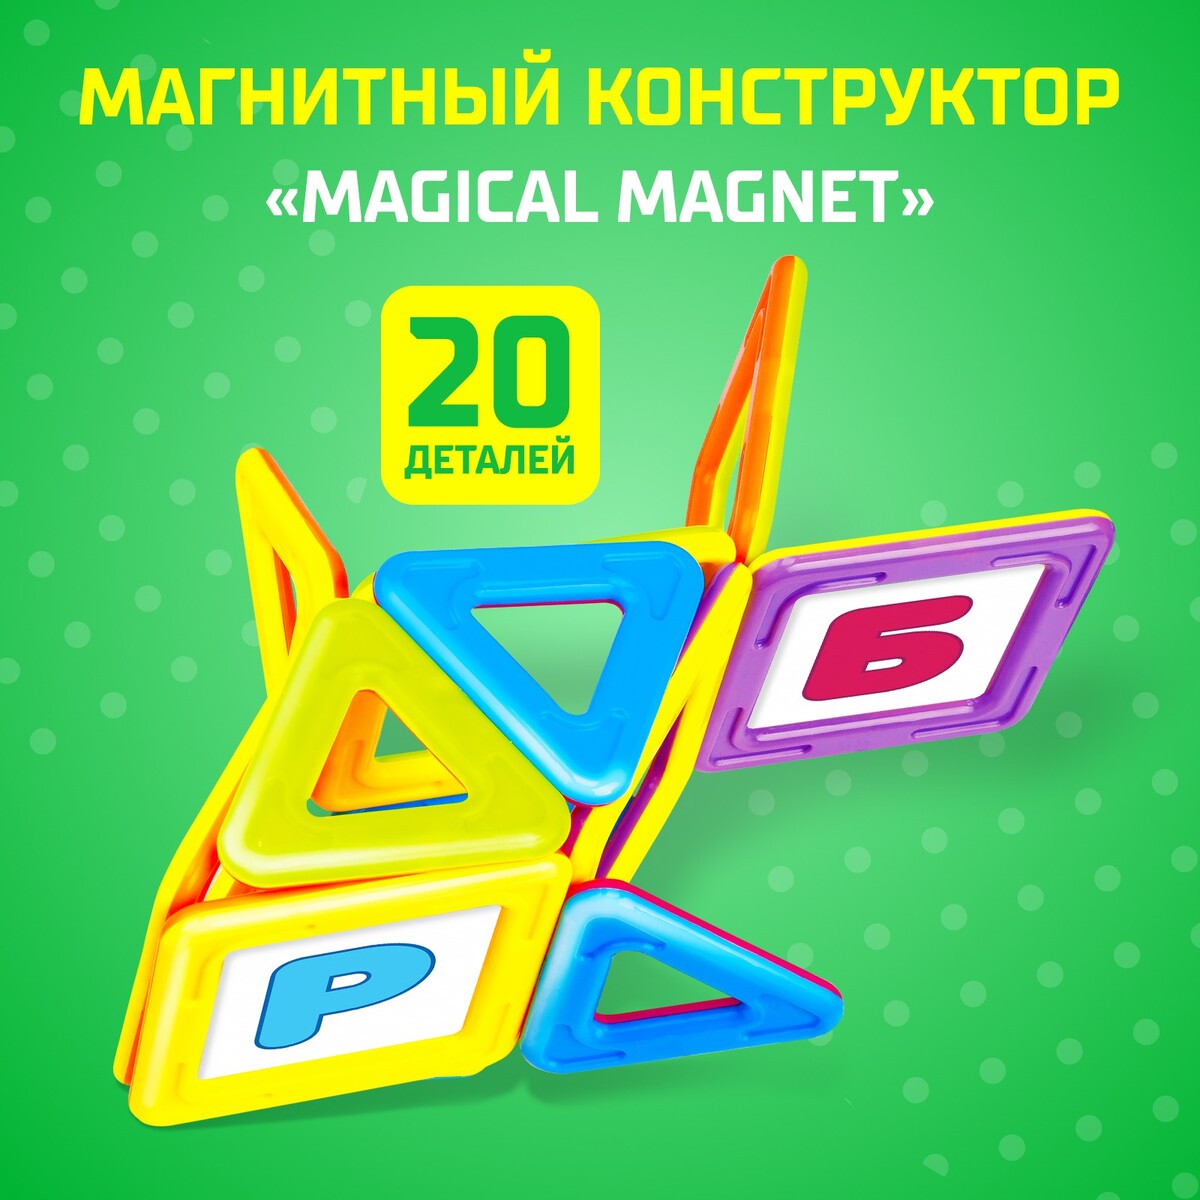 Магнитный конструктор magical magnet, 20 деталей, детали матовые конструктор магнитный домик 84 детали sima land